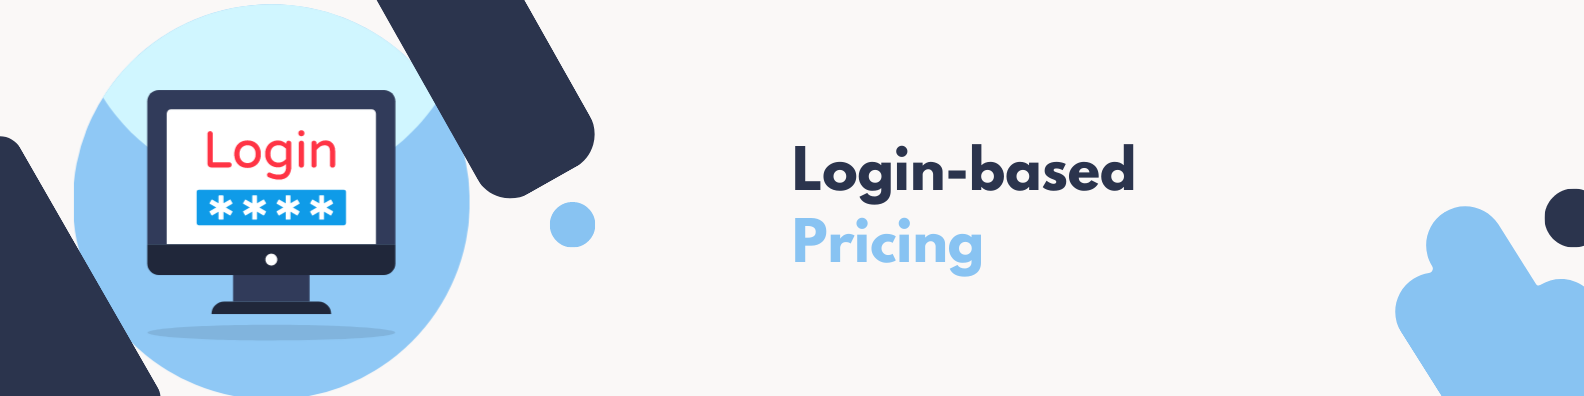 Login-based pricing